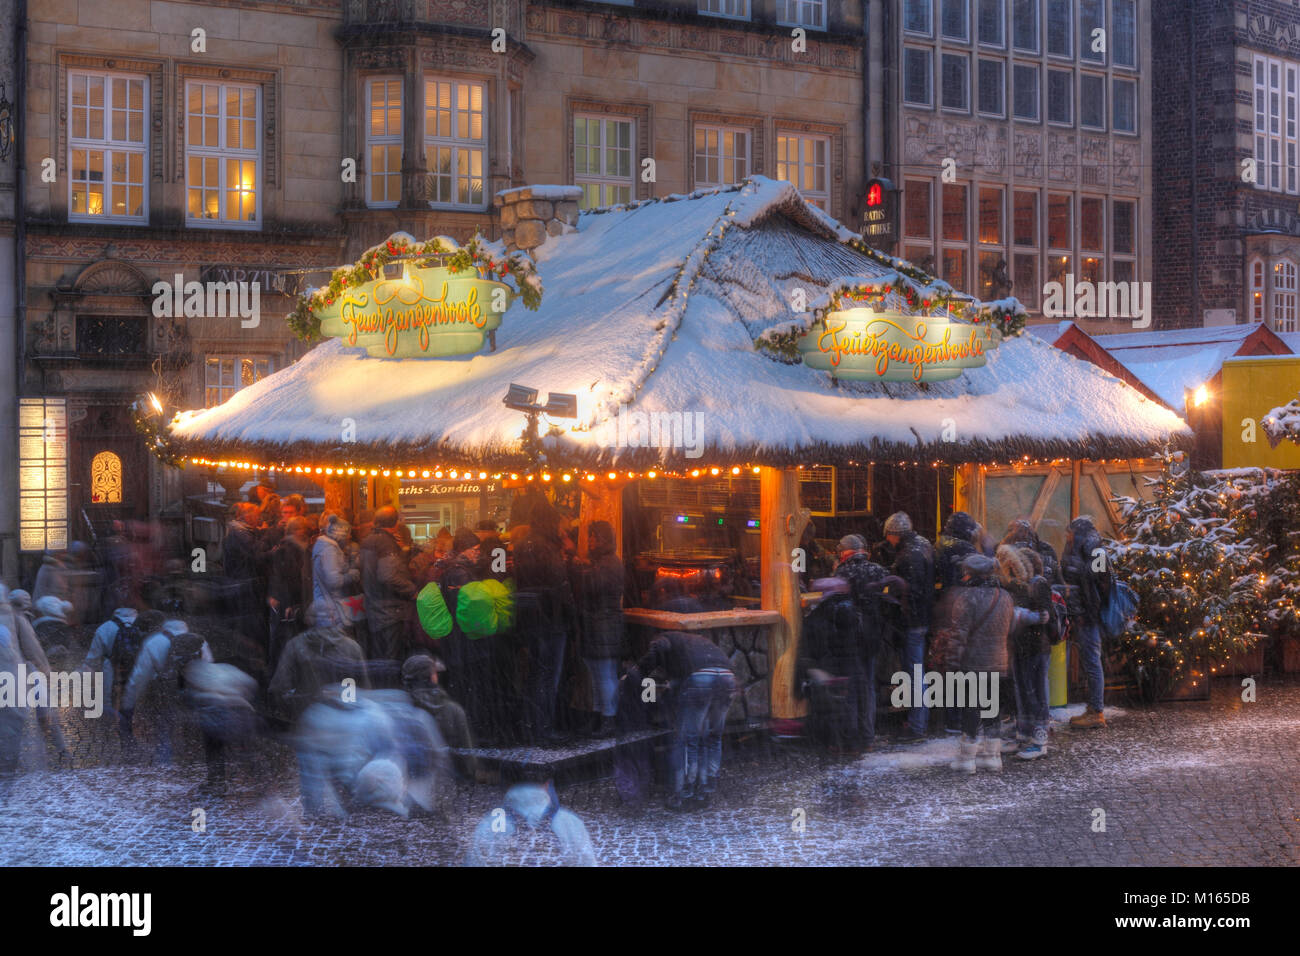 Verschneiter Glühweinstand auf dem  Weihnachtsmarkt am Marktplatz bei Abenddämmerung, Bremen, Deutschland Stock Photo